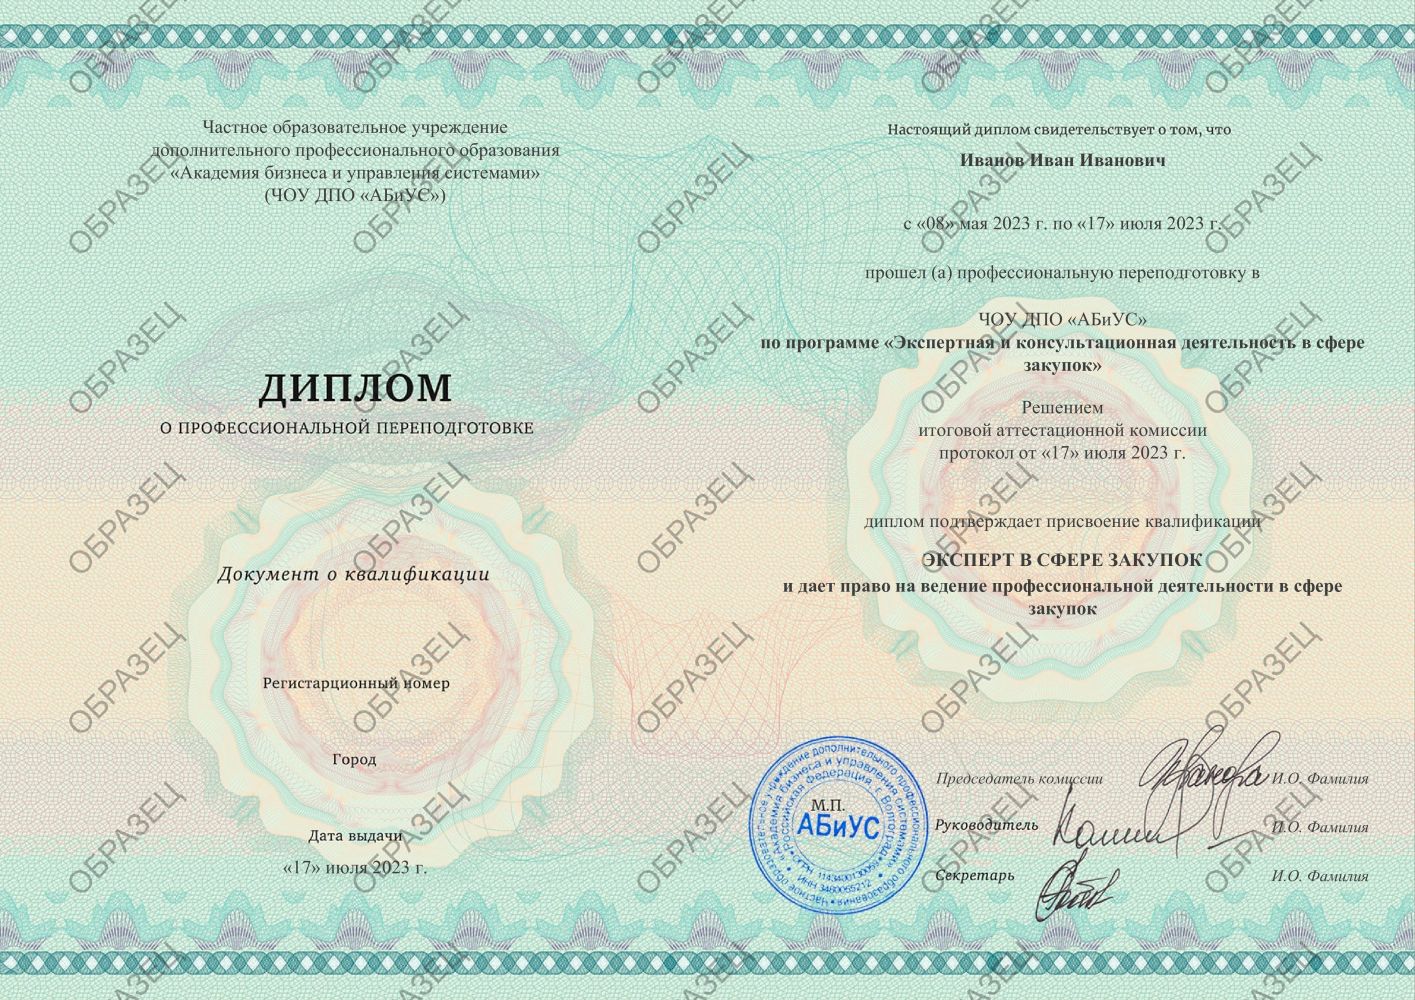 Диплом Экспертная и консультационная деятельность в сфере закупок 260 часов 17500 руб.